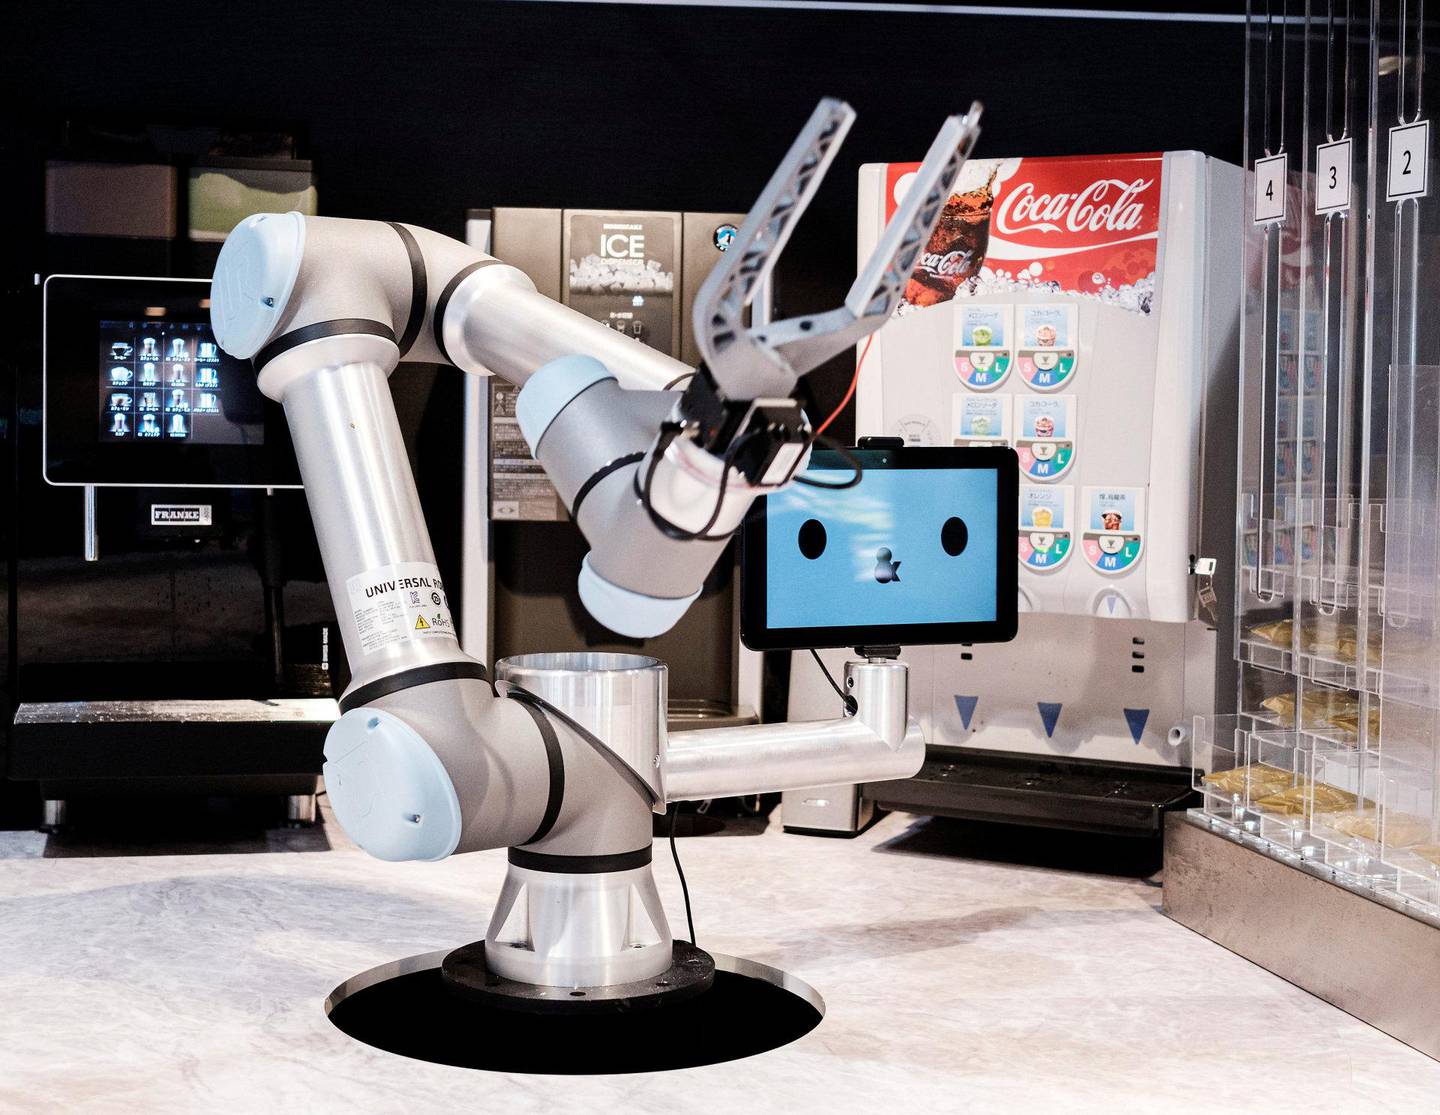 SÅNN! ... er vi vant til å se roboter brukt i industrien. Denne serverer kaffe på robothotellets kafé.